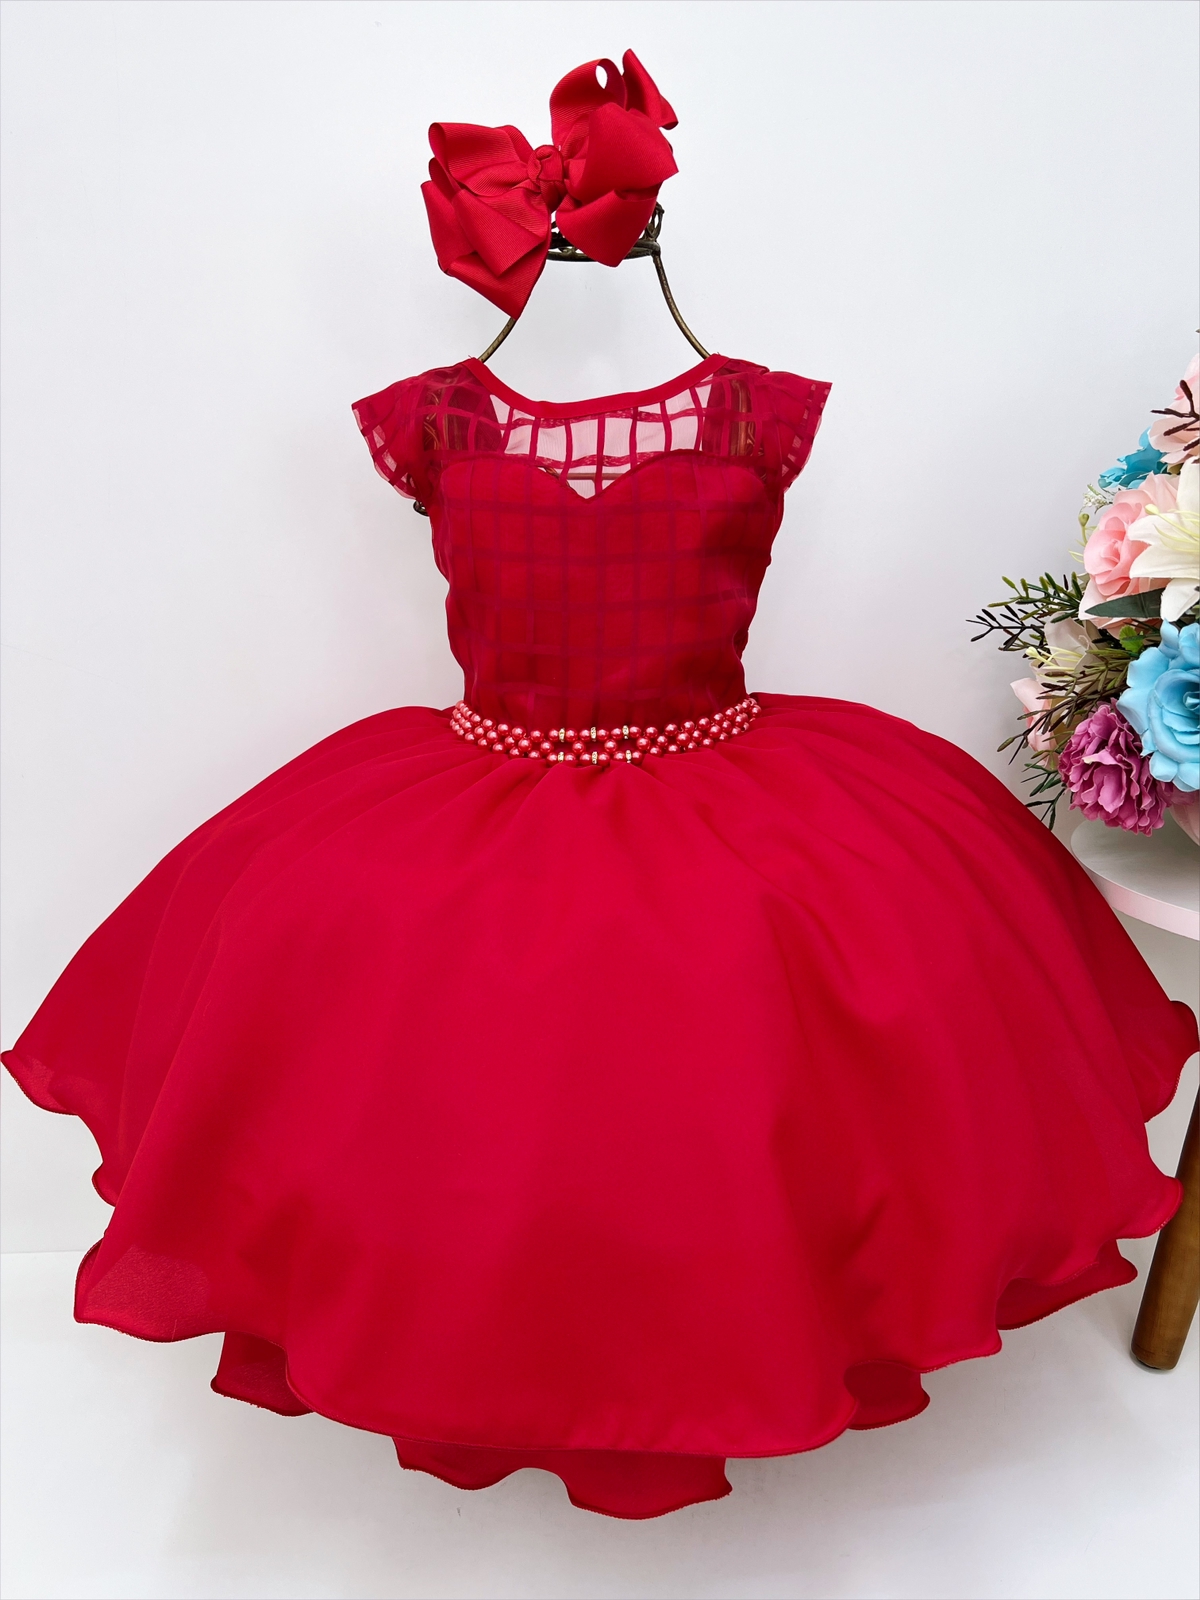 Vestido Infantil Princesa Rosa com Cinto Pérolas - Fabuloso Ateliê